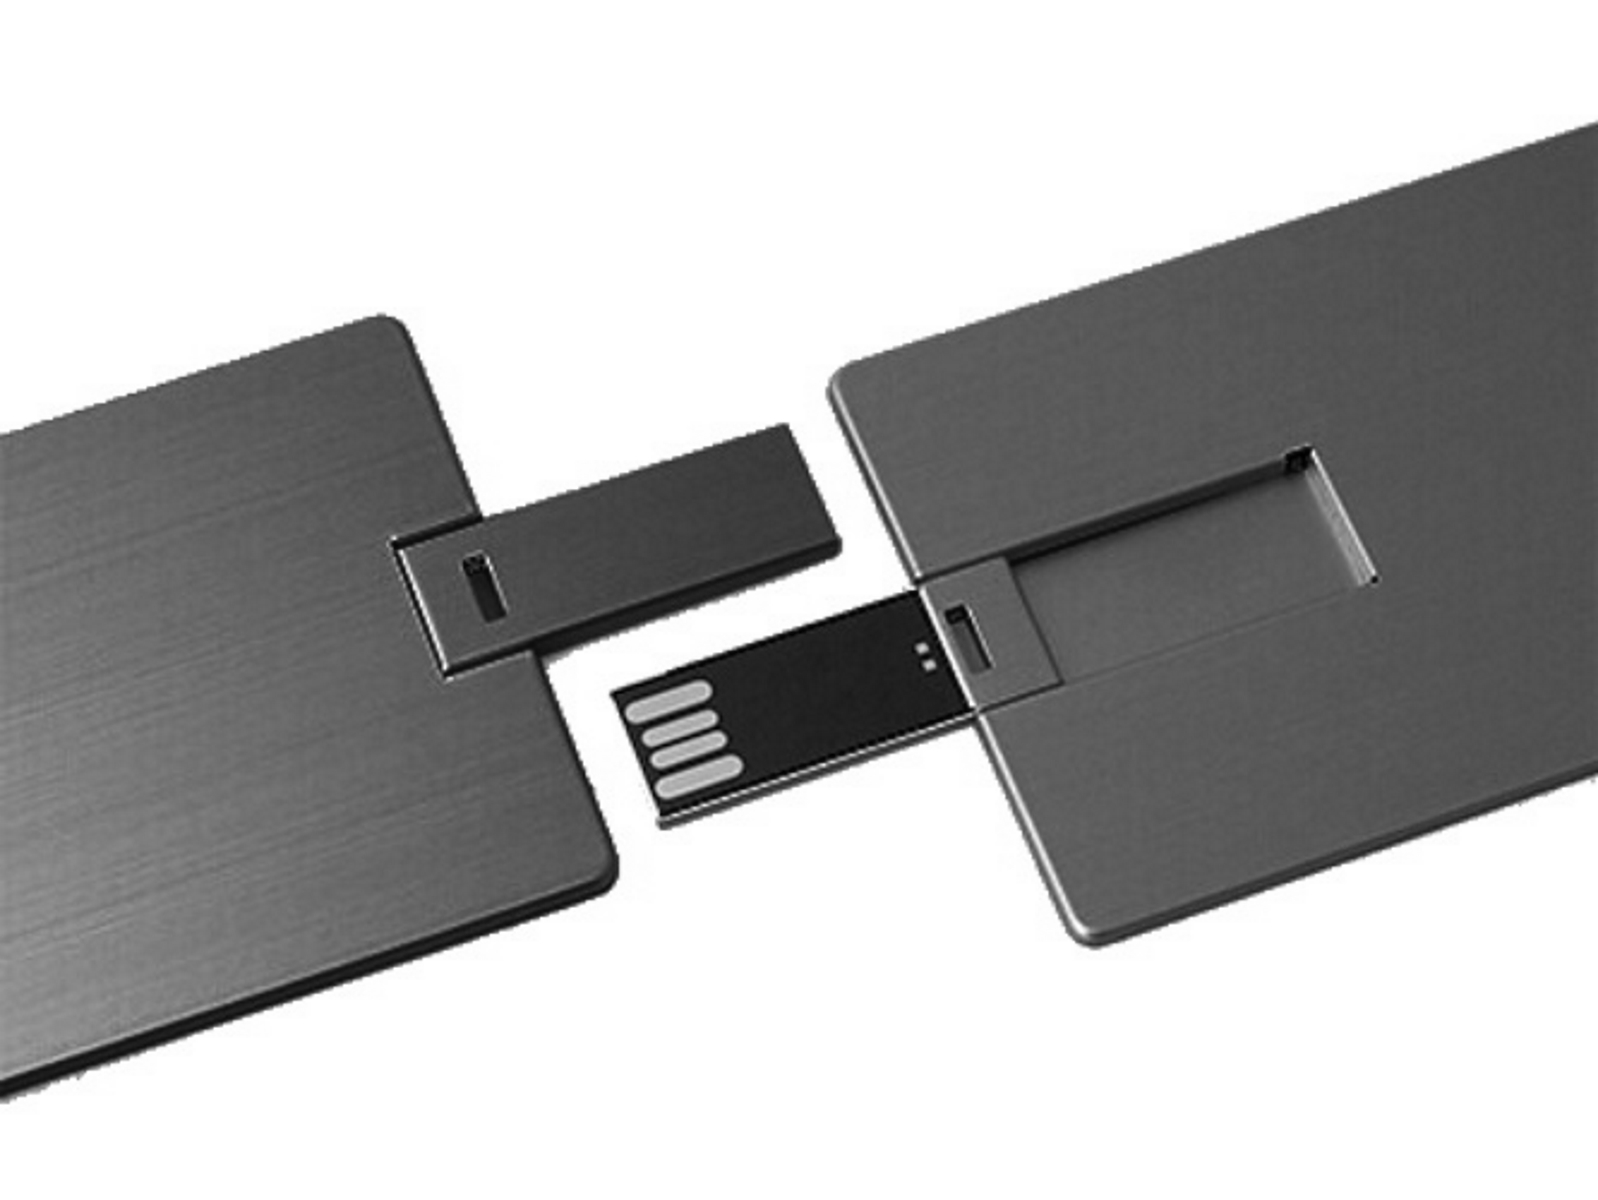 USB GB) Metall-Kreditkarte (Schwarz, ® GERMANY USB-Stick 16